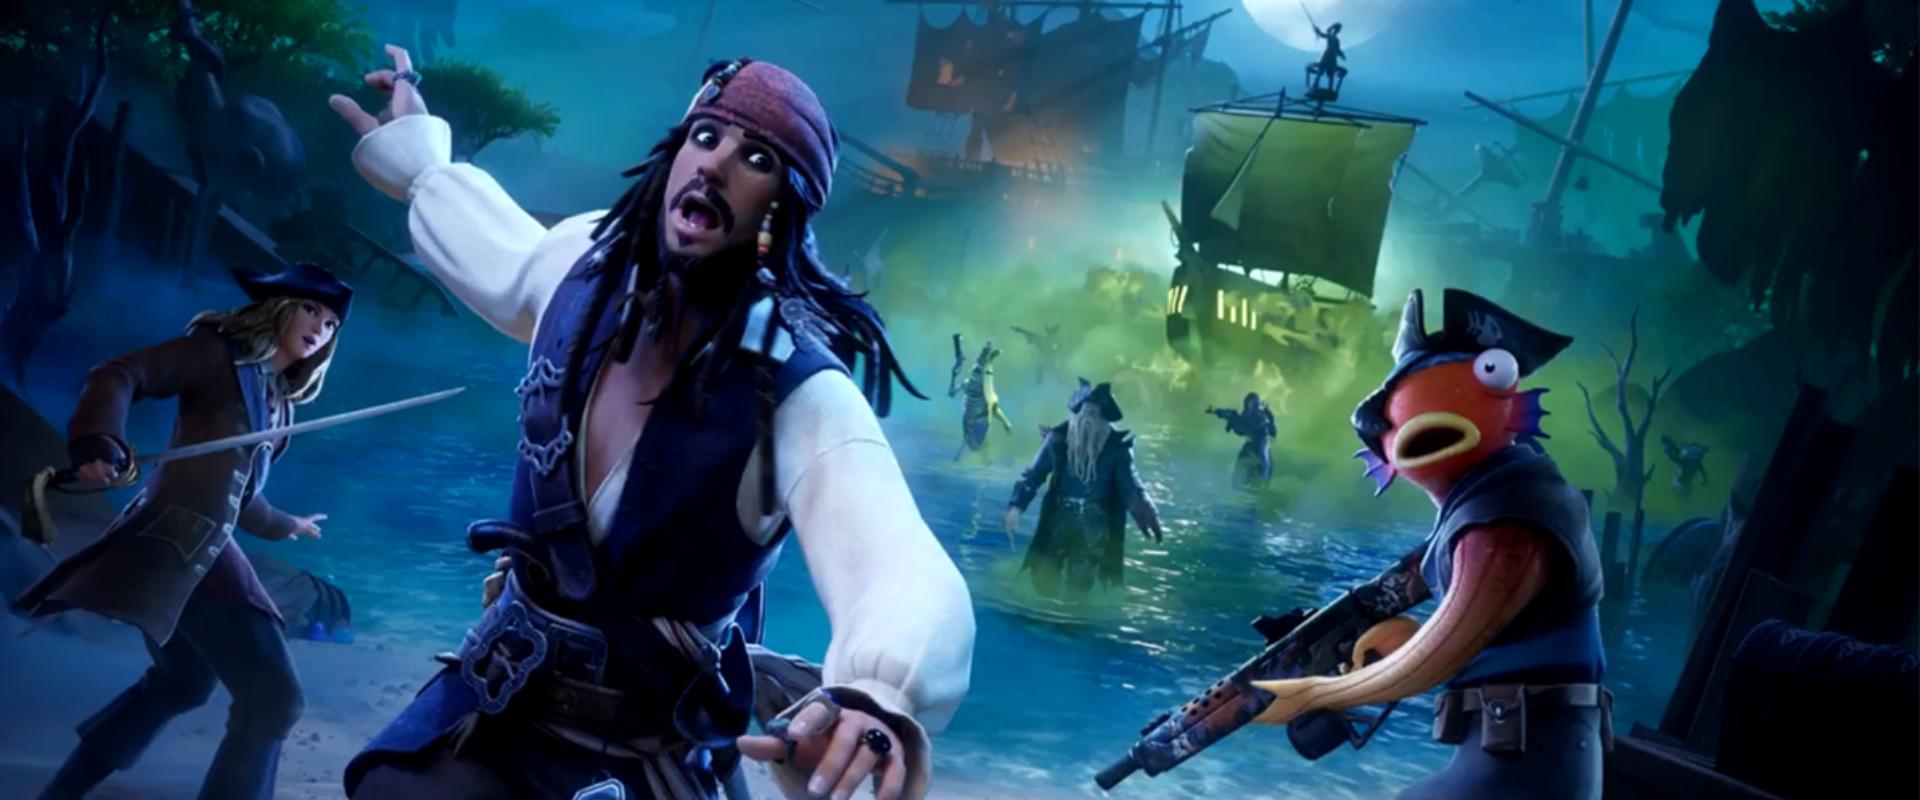 Jack Sparrow karakterével erősít a Fortnite